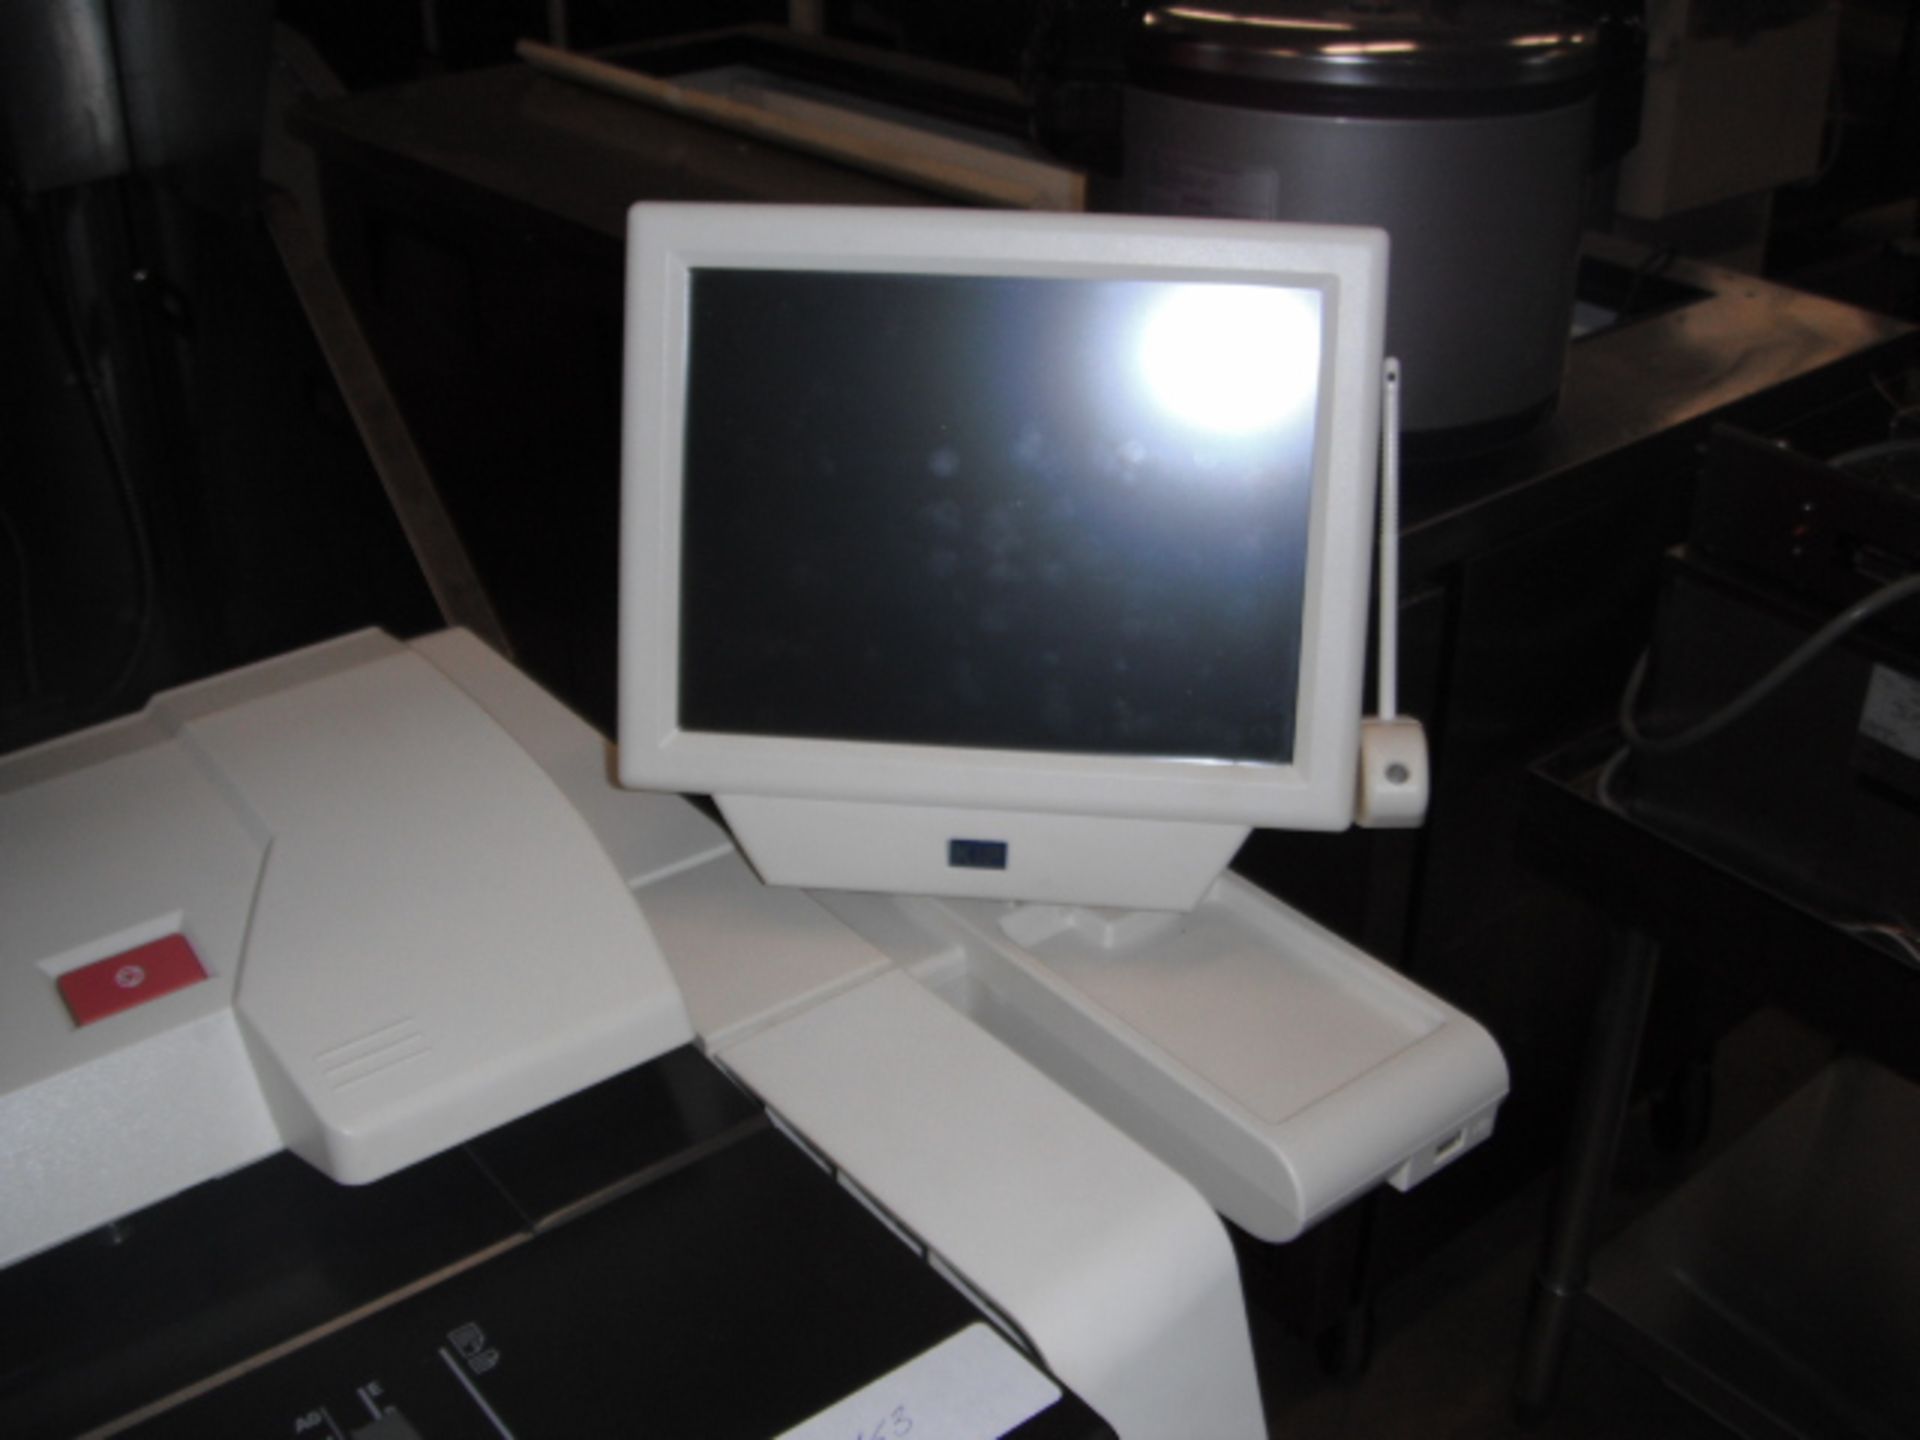 Kip 7100 Multifunction Printer (43011) - Image 2 of 3